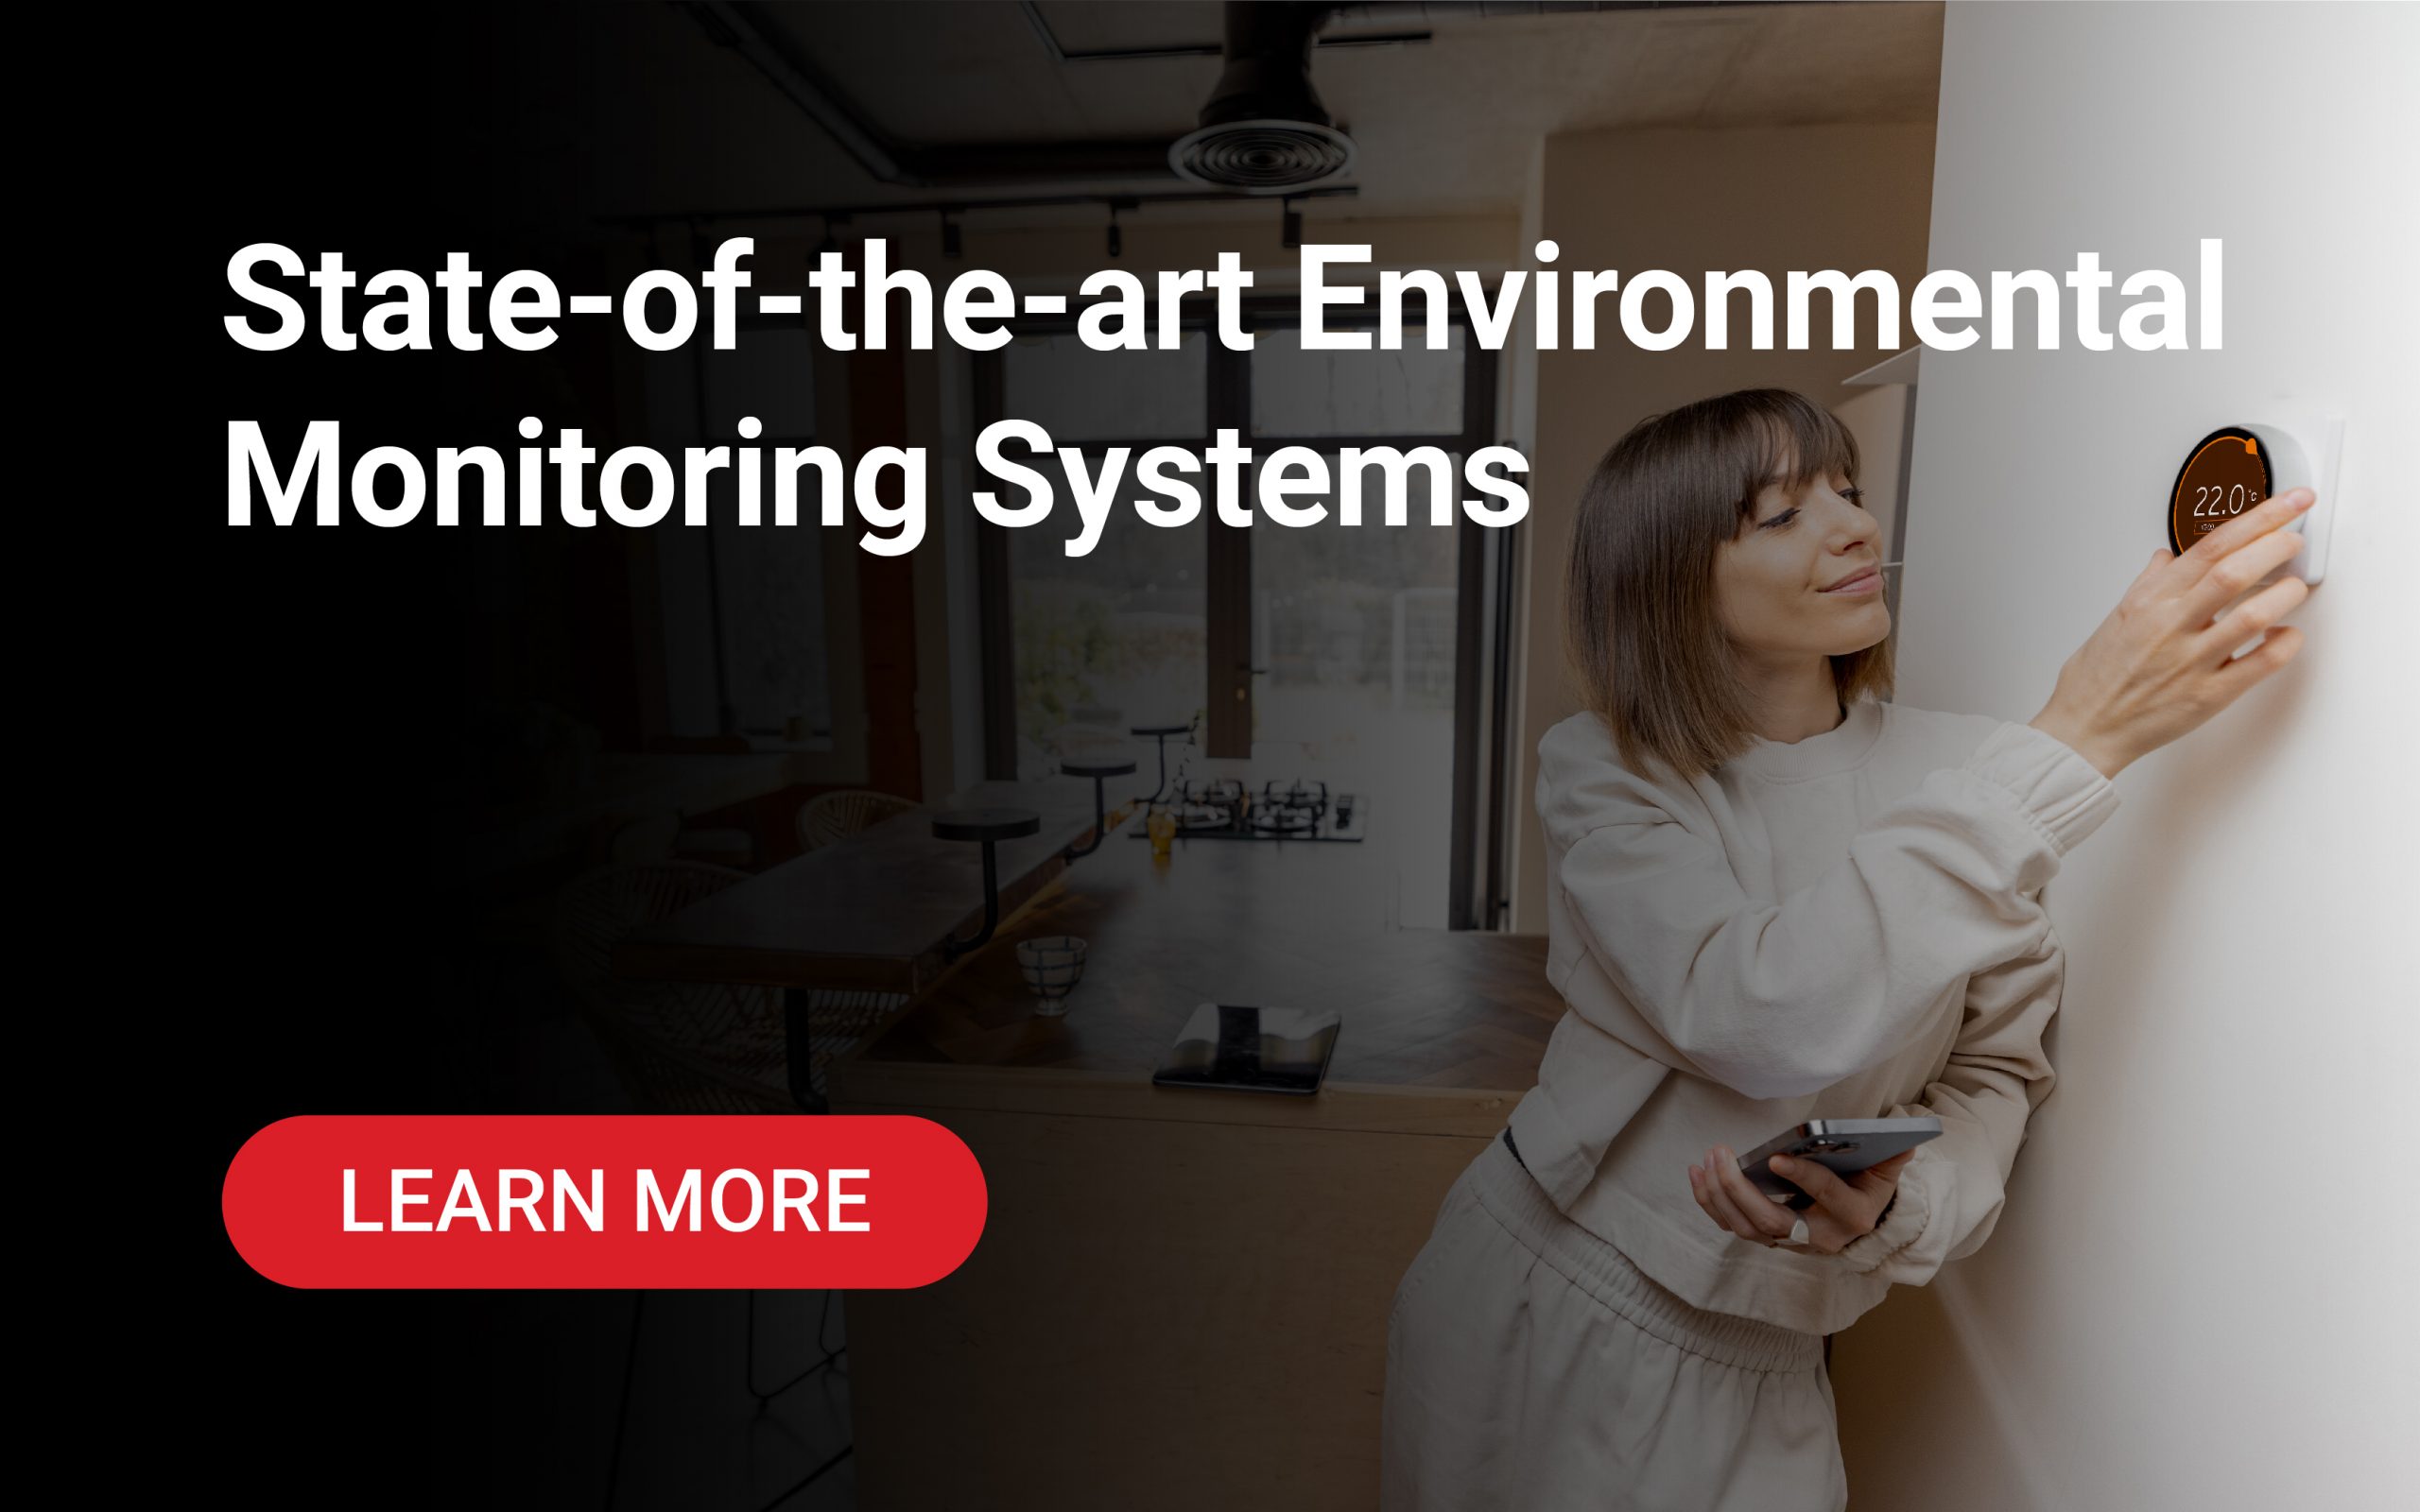 environmental monitoring system